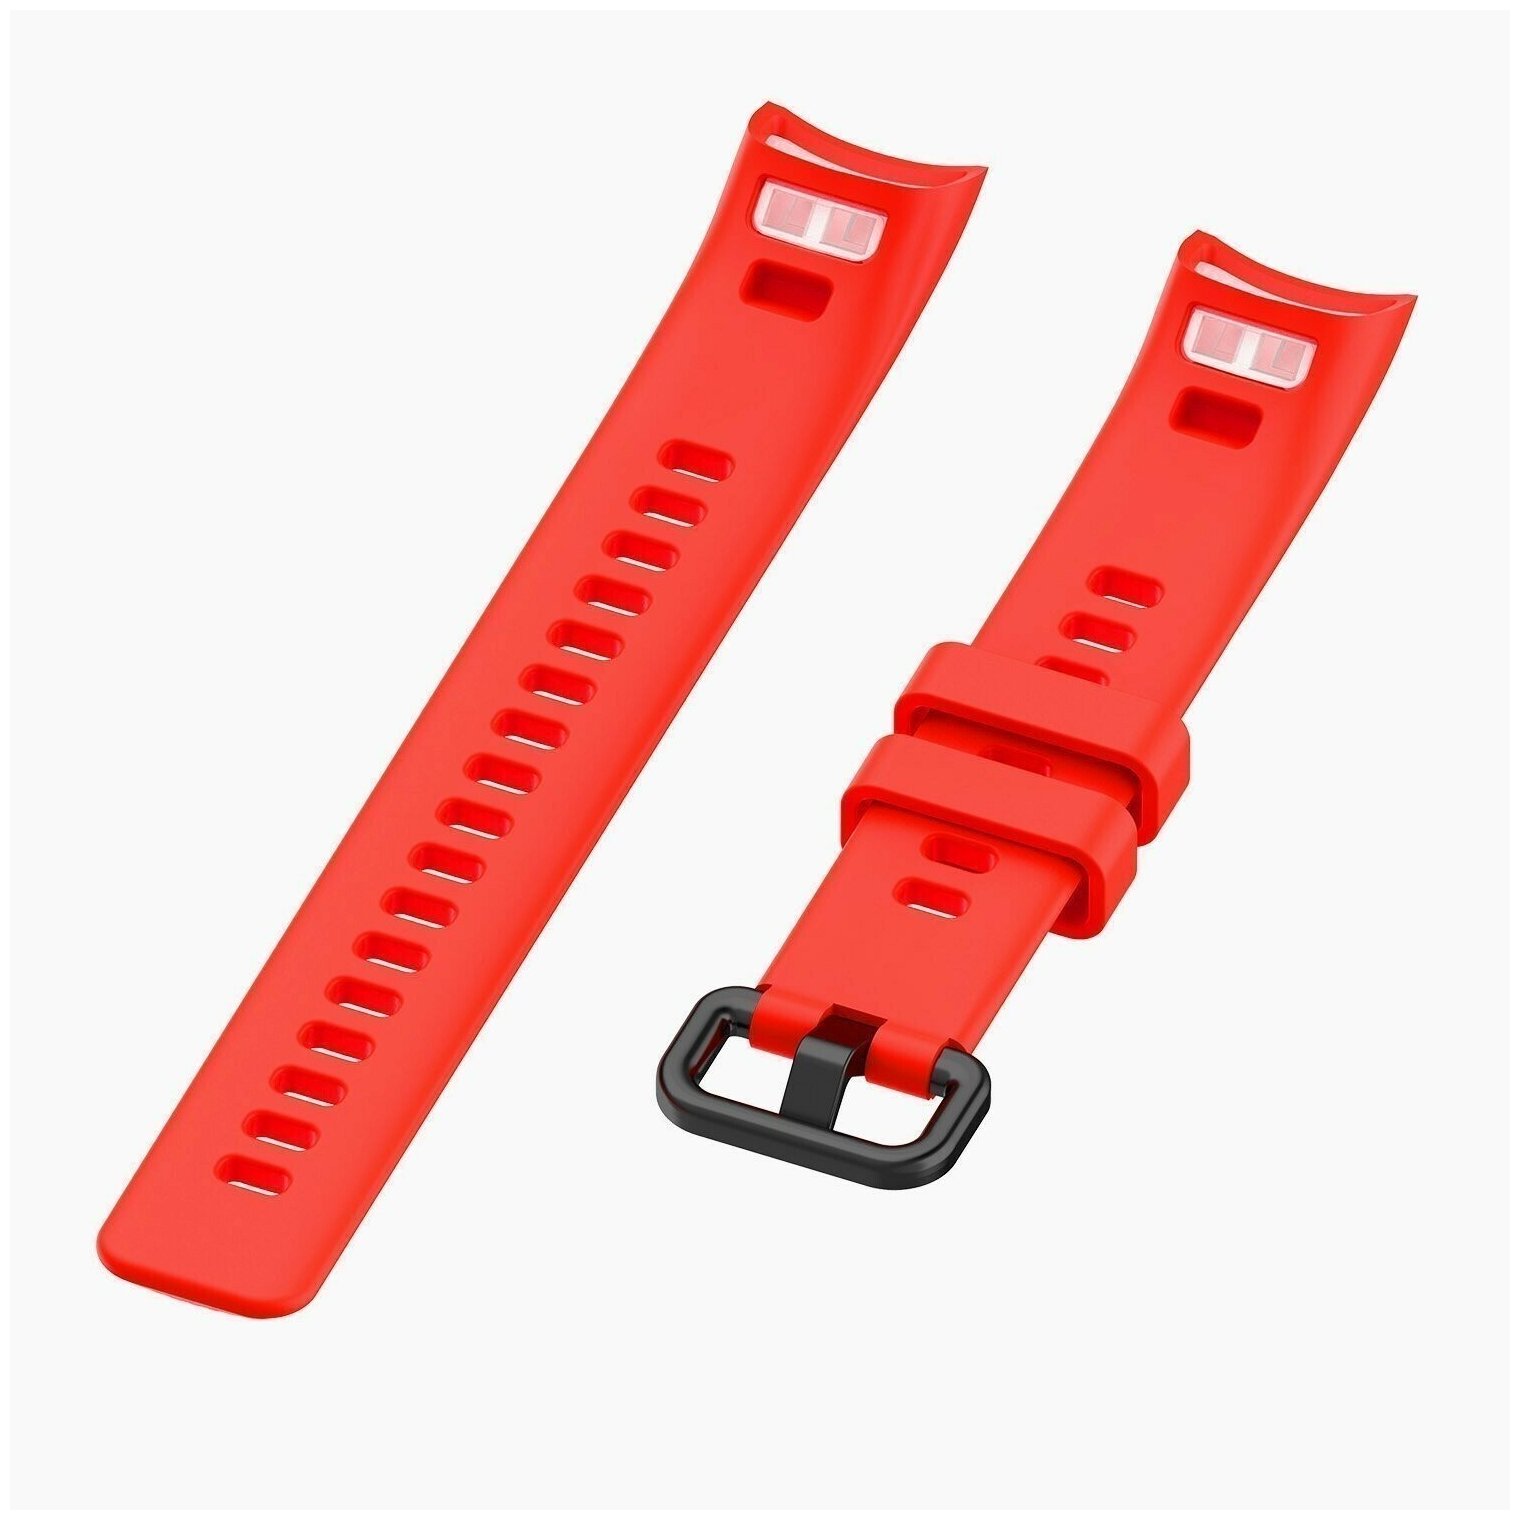 Силиконовый ремешок для Honor Band 4 / 5 / Сменный браслет для умныхарт часов / фитнес трекера Хонор 4 / 5 Красный